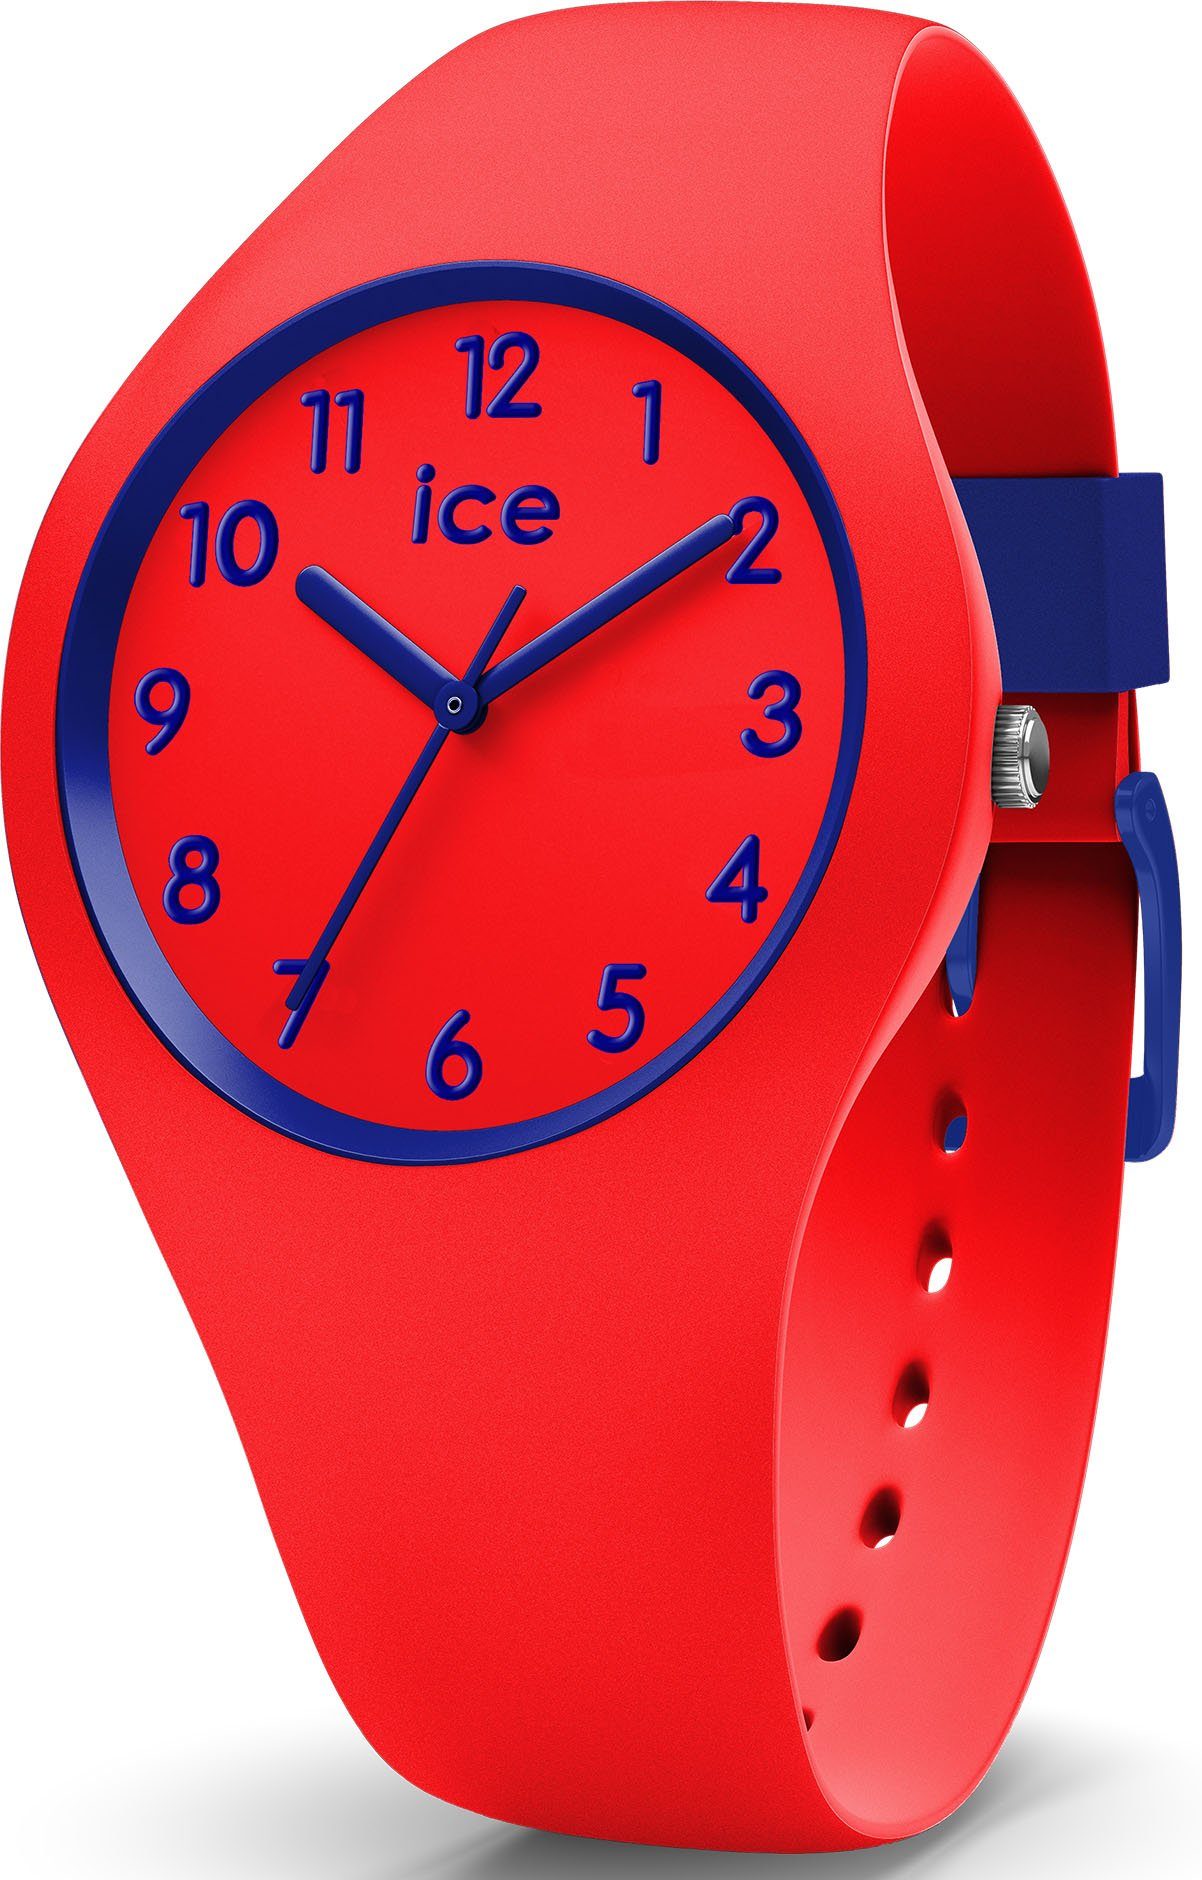 ice-watch Quarzuhr ICE ola ideal 014429, Geschenk auch als kids